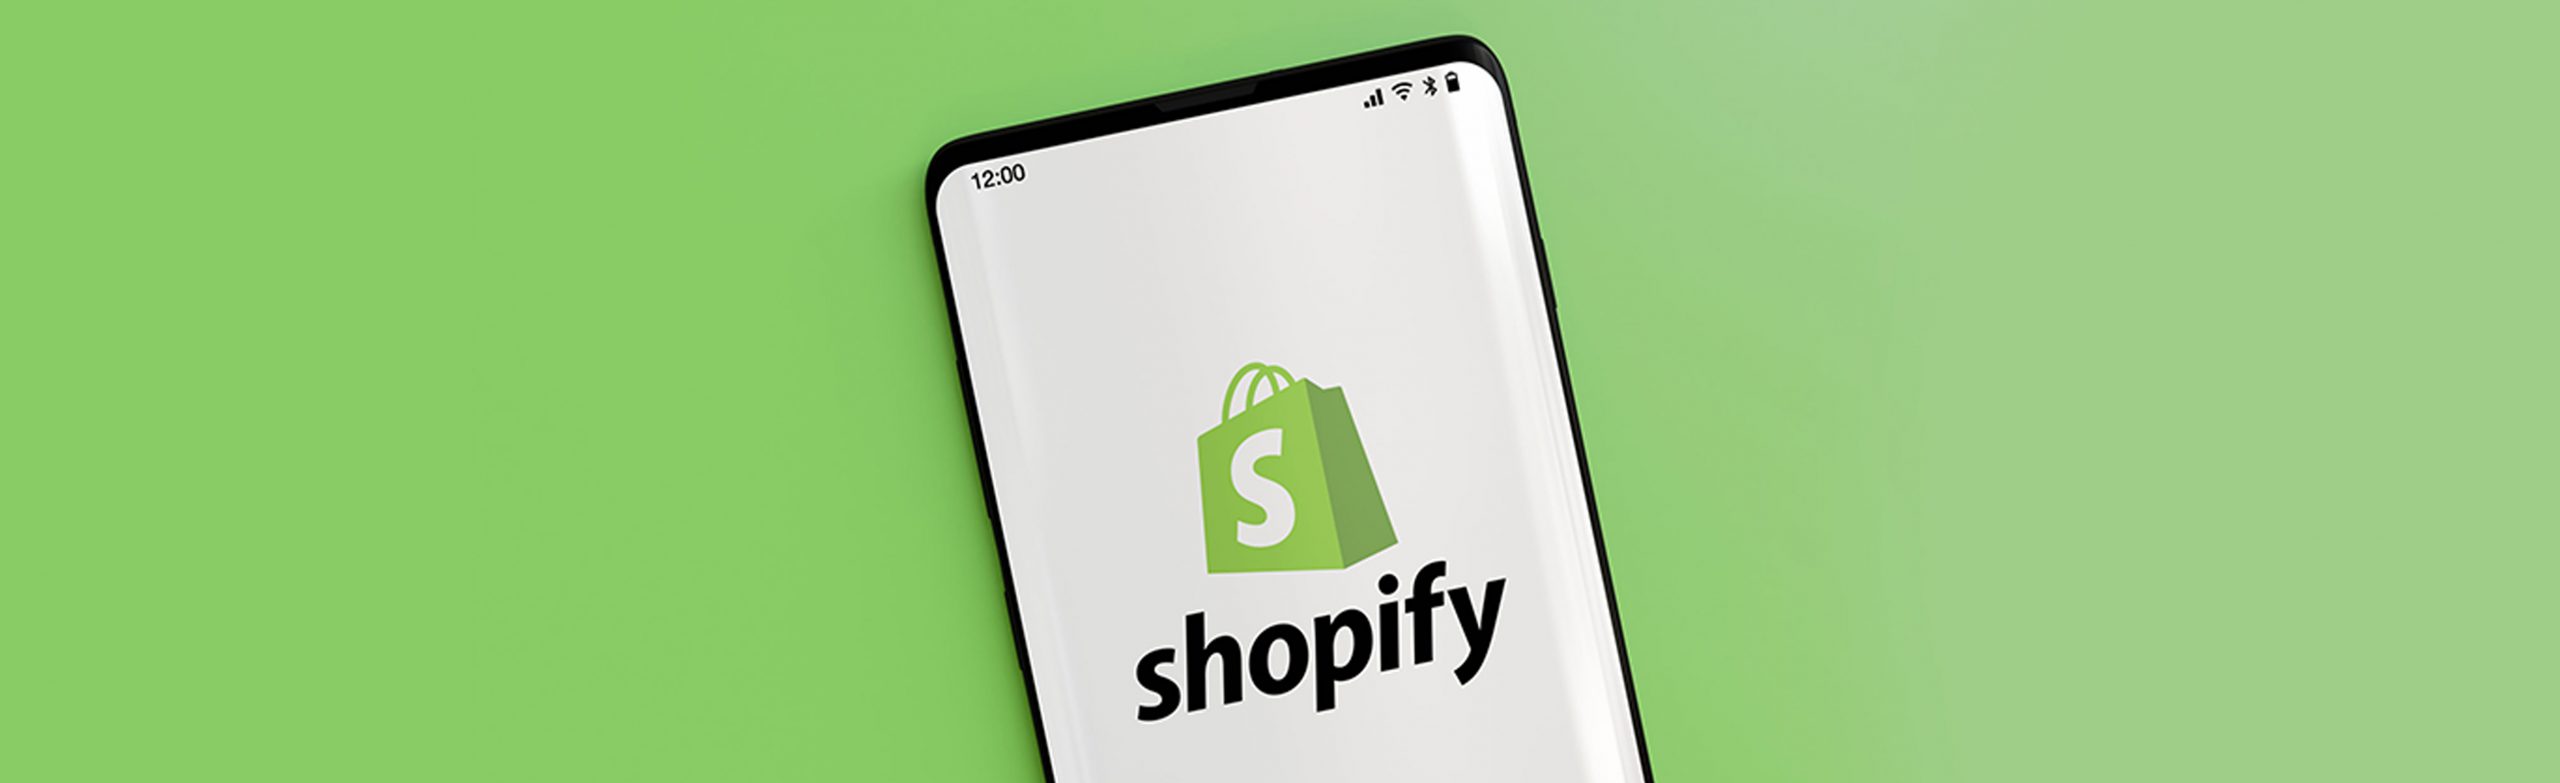 Shopify Fulfillment Service